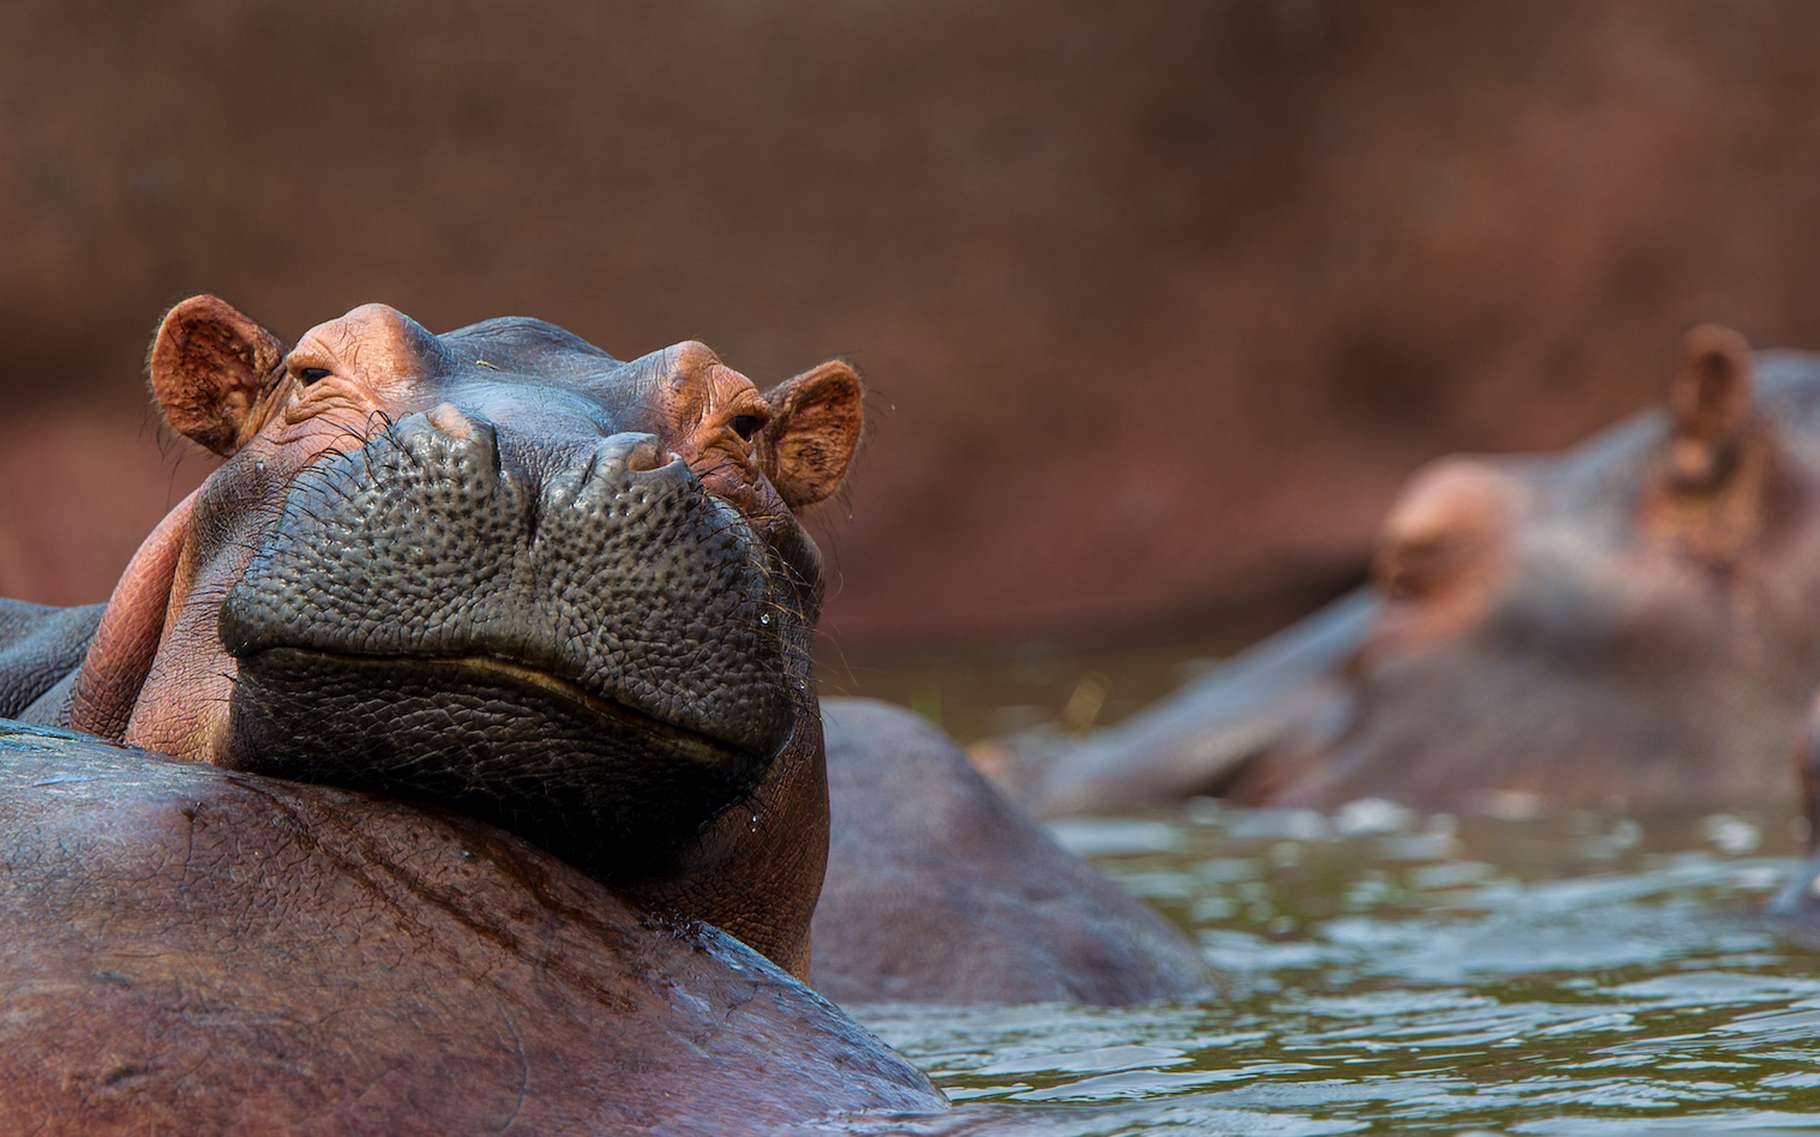 L’hippopotame a la réputation d’être quelque peu… sanguin. Mais cela semble ne pas l’empêcher d’avoir des comportements sociaux. Il serait ainsi capable de reconnaître un compagnon à sa seule voix. Pas si bête, l’hippopotame. © macs, Adobe Stock